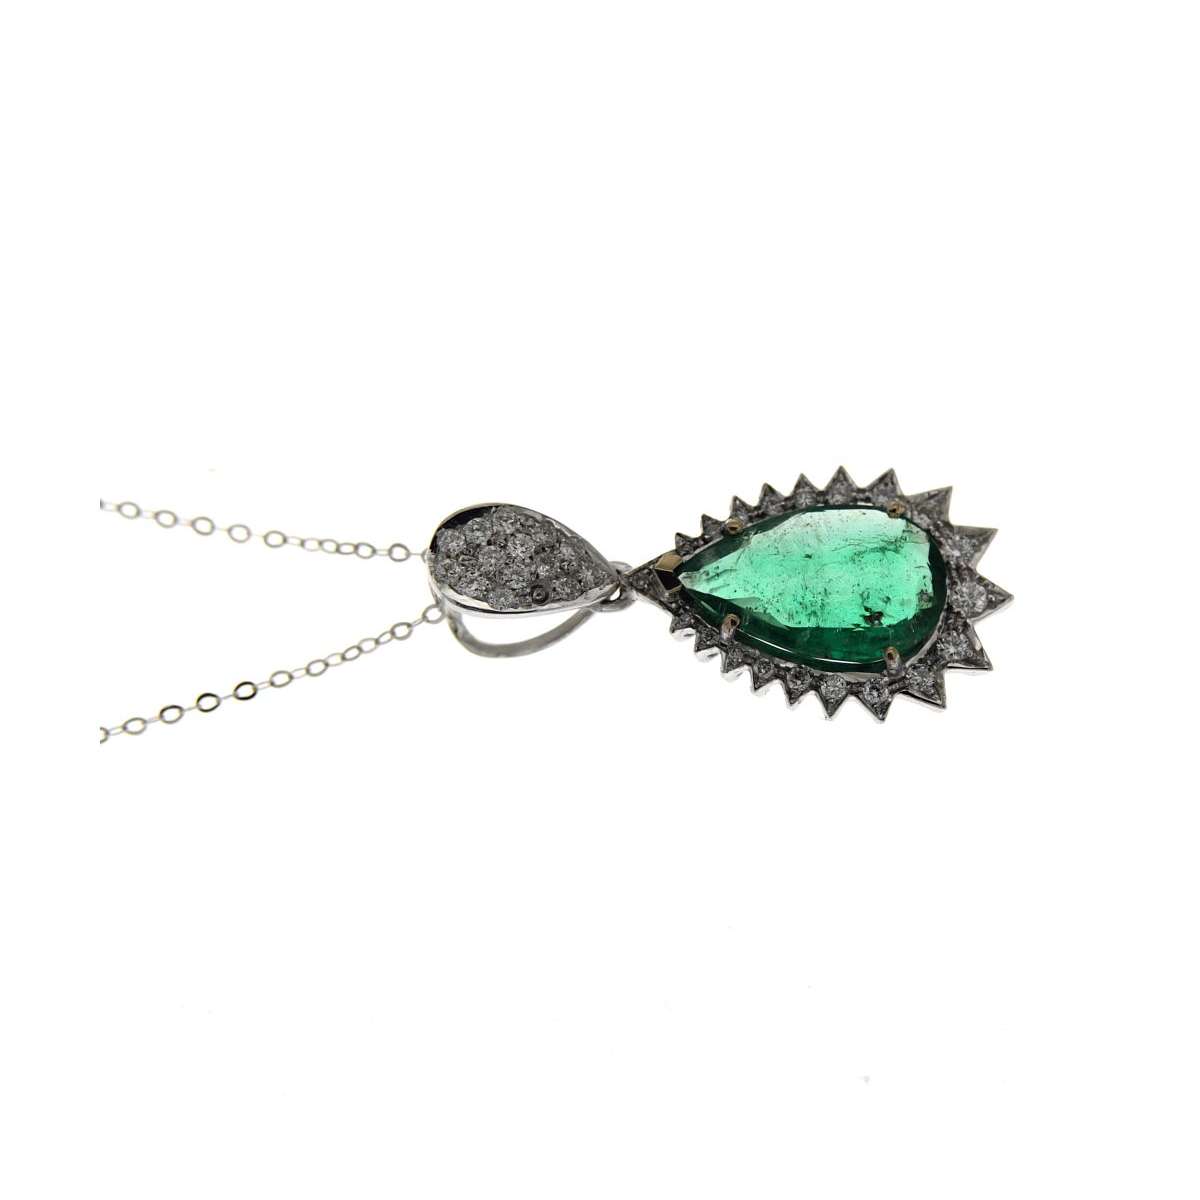 Necklace with teardrop emerald carat 2.63 carat diamonds 0.35 G-VS1